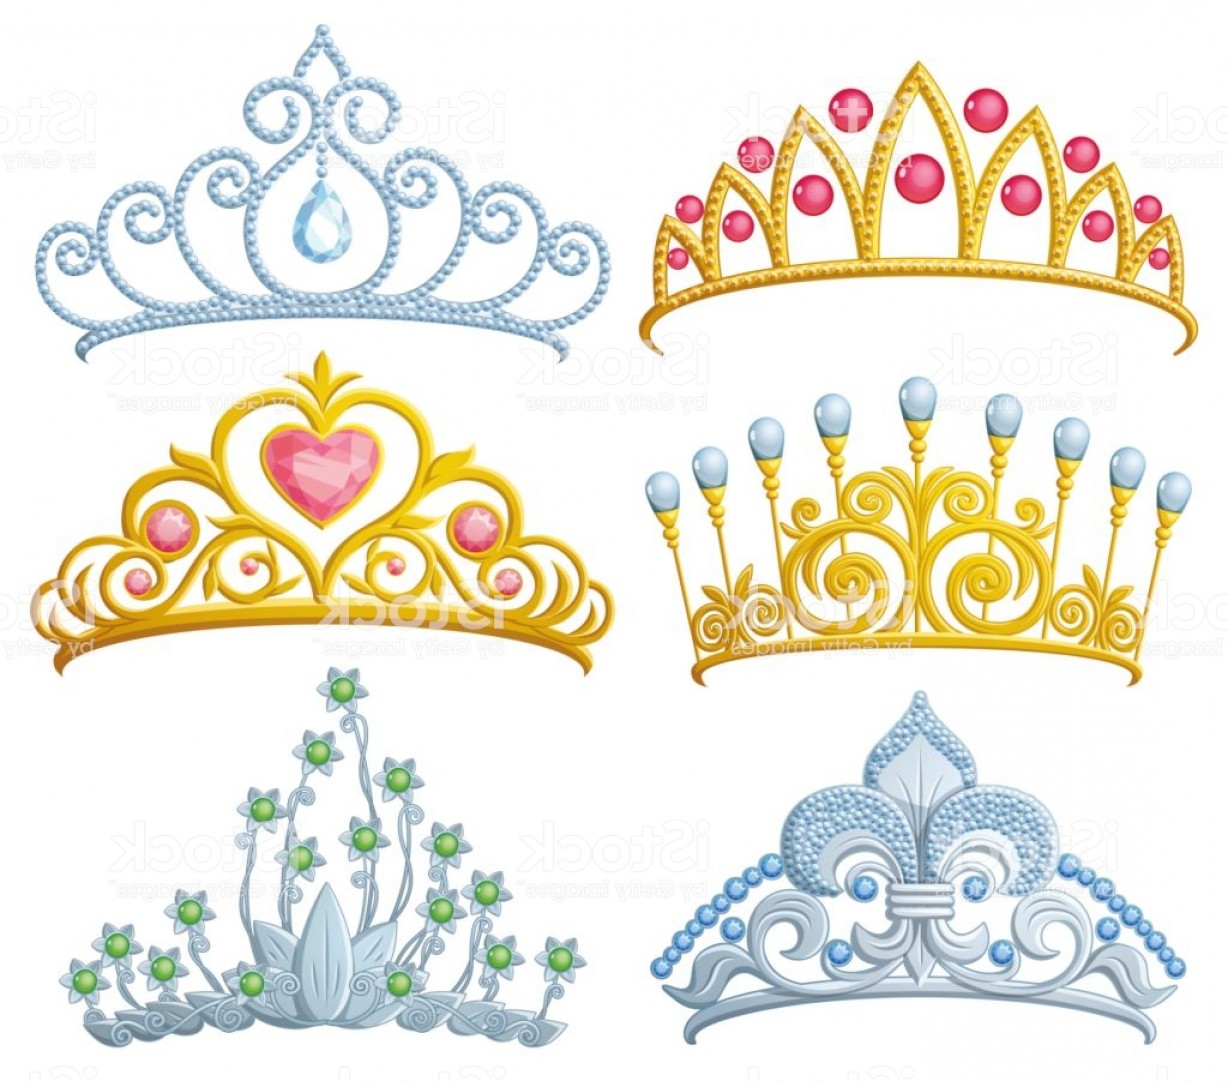 Срисовать украшение корону